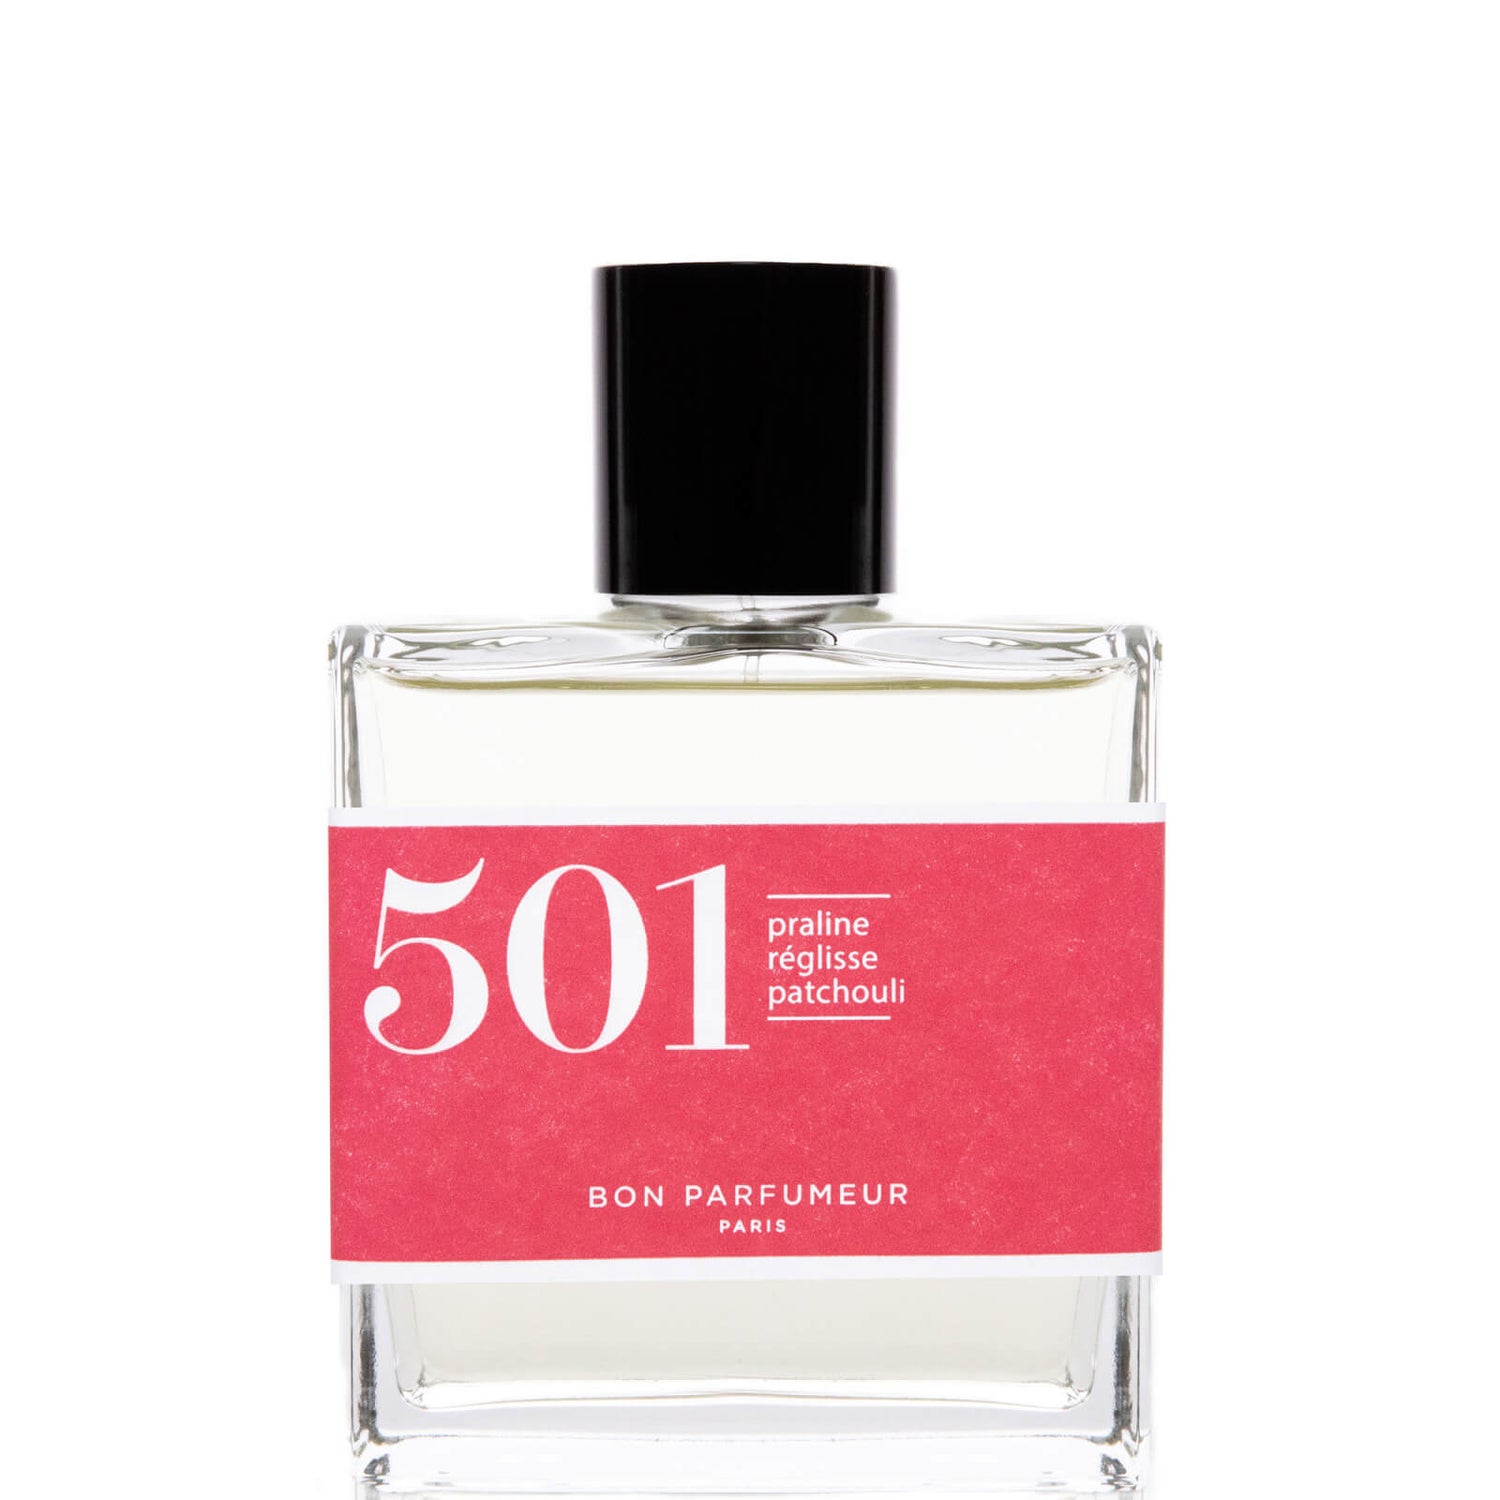 Bon Parfumeur 501 Eau de Parfum Regaliz Patchouli - 100ml